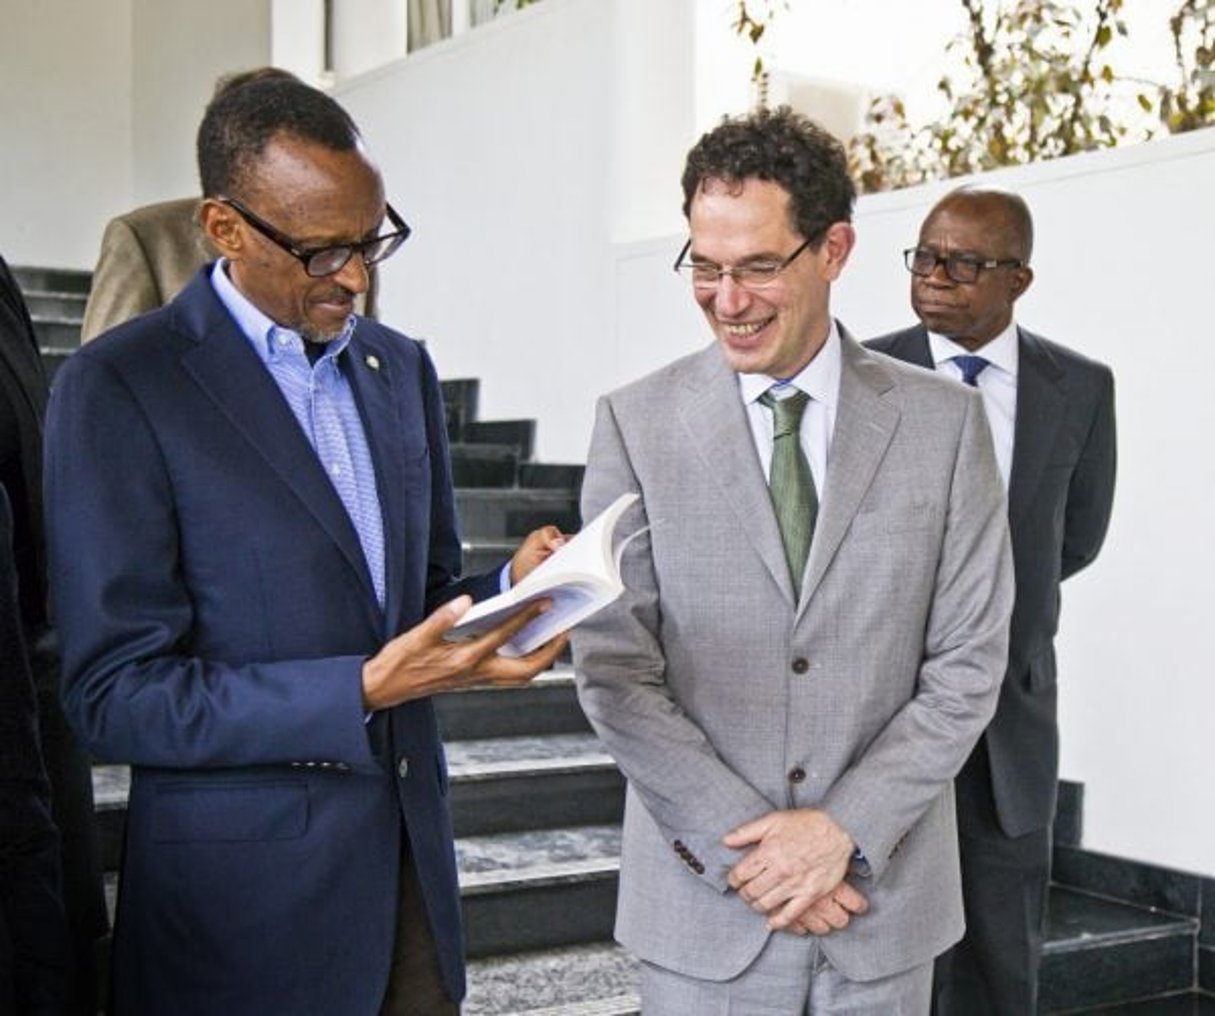 Le fondateur de l’AIMS avec le président rwandais, à Kigali, le 1er décembre 2015. © PR Rwanda